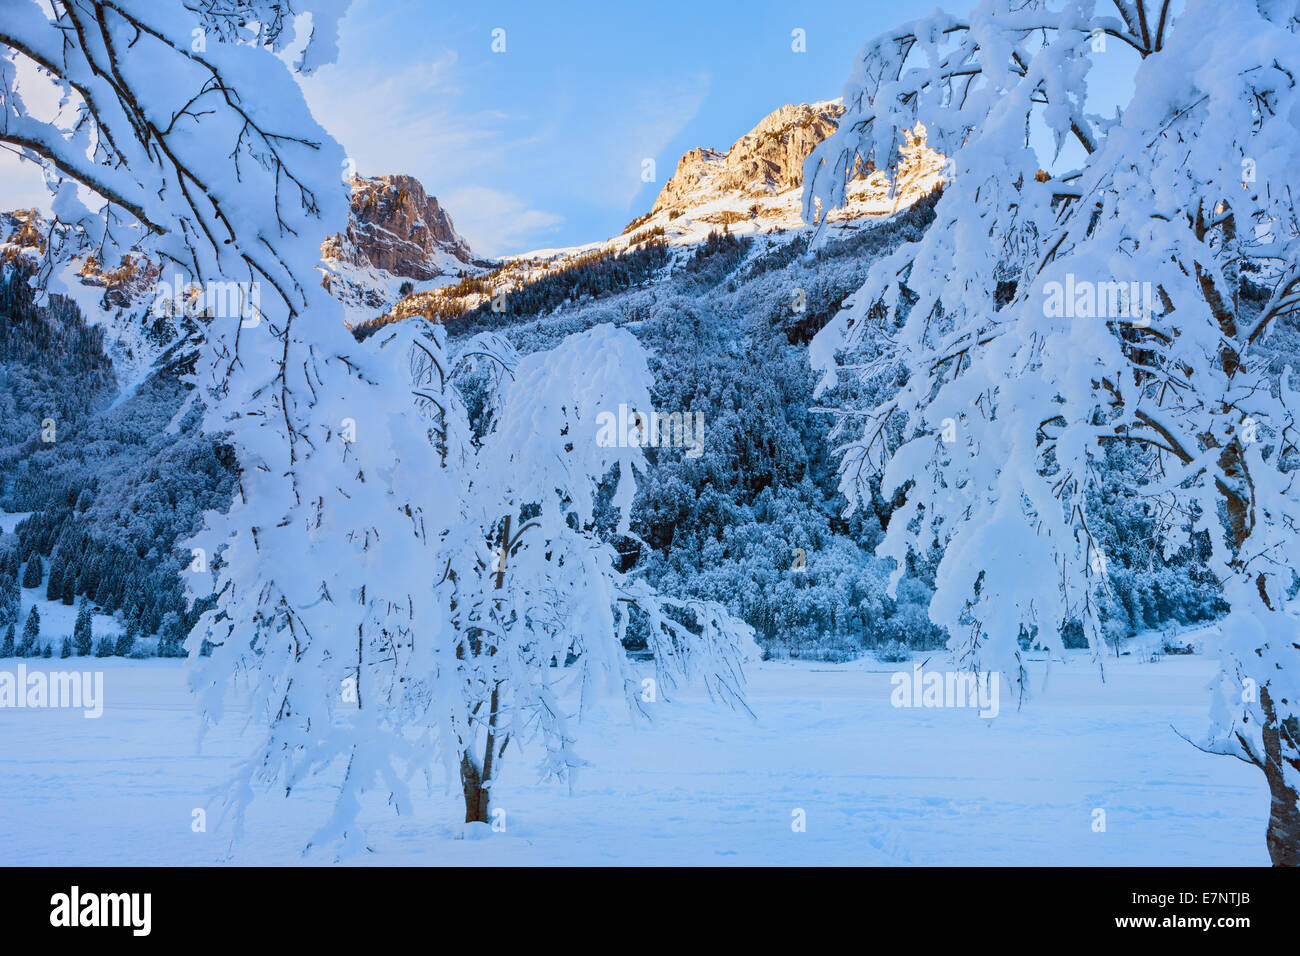 Klöntal, Switzerland, Europe, canton Glarus, mountains, trees, snow, winter, evening light Stock Photo